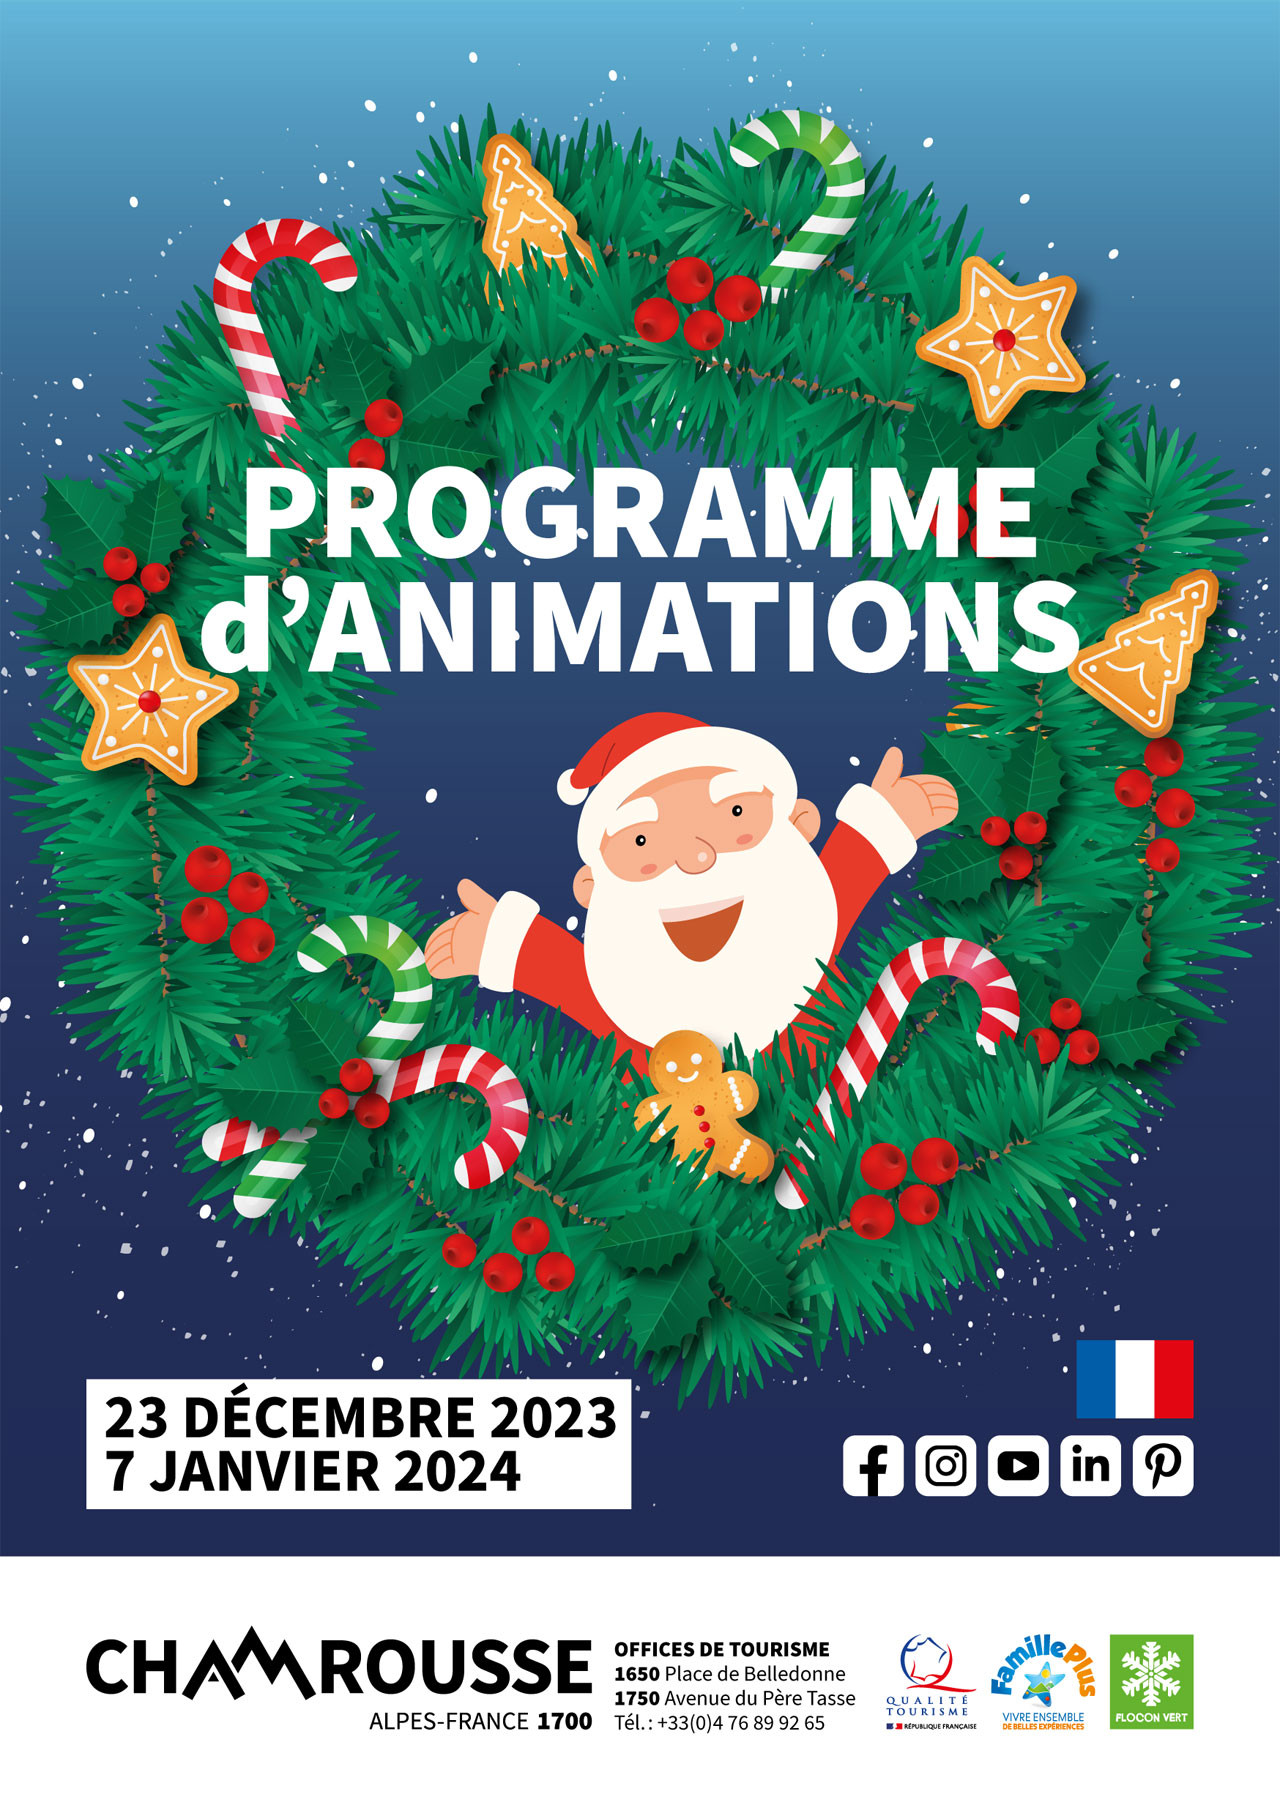 Chamrousse programme animation événement hiver décembre noel 2023 station ski montagne grenoble isère alpes france